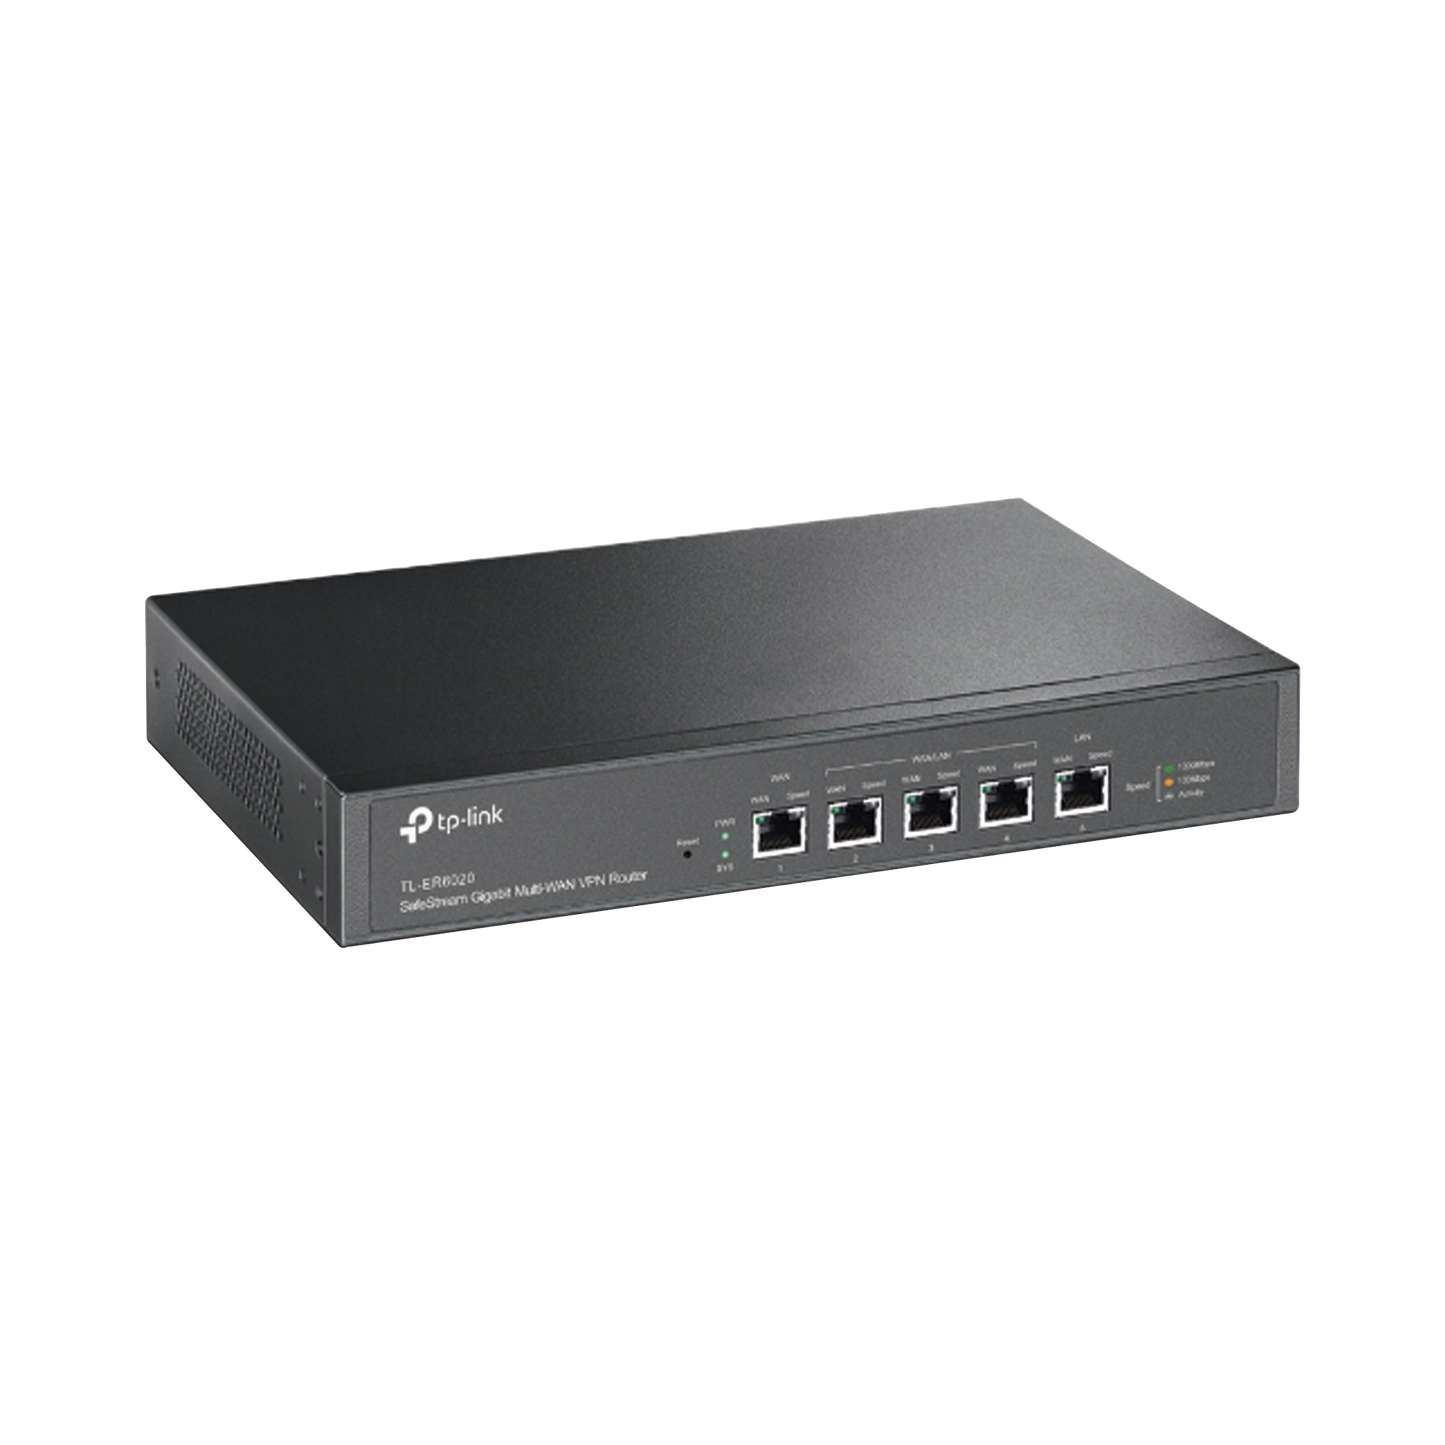 Router Balanceador de Carga Multi-WAN Gigabit, 2 puerto LAN Gigabit, 2 puerto WAN Gigabit, 30,000 Sesiones Concurrentes para Pequeño y Mediano Negocio